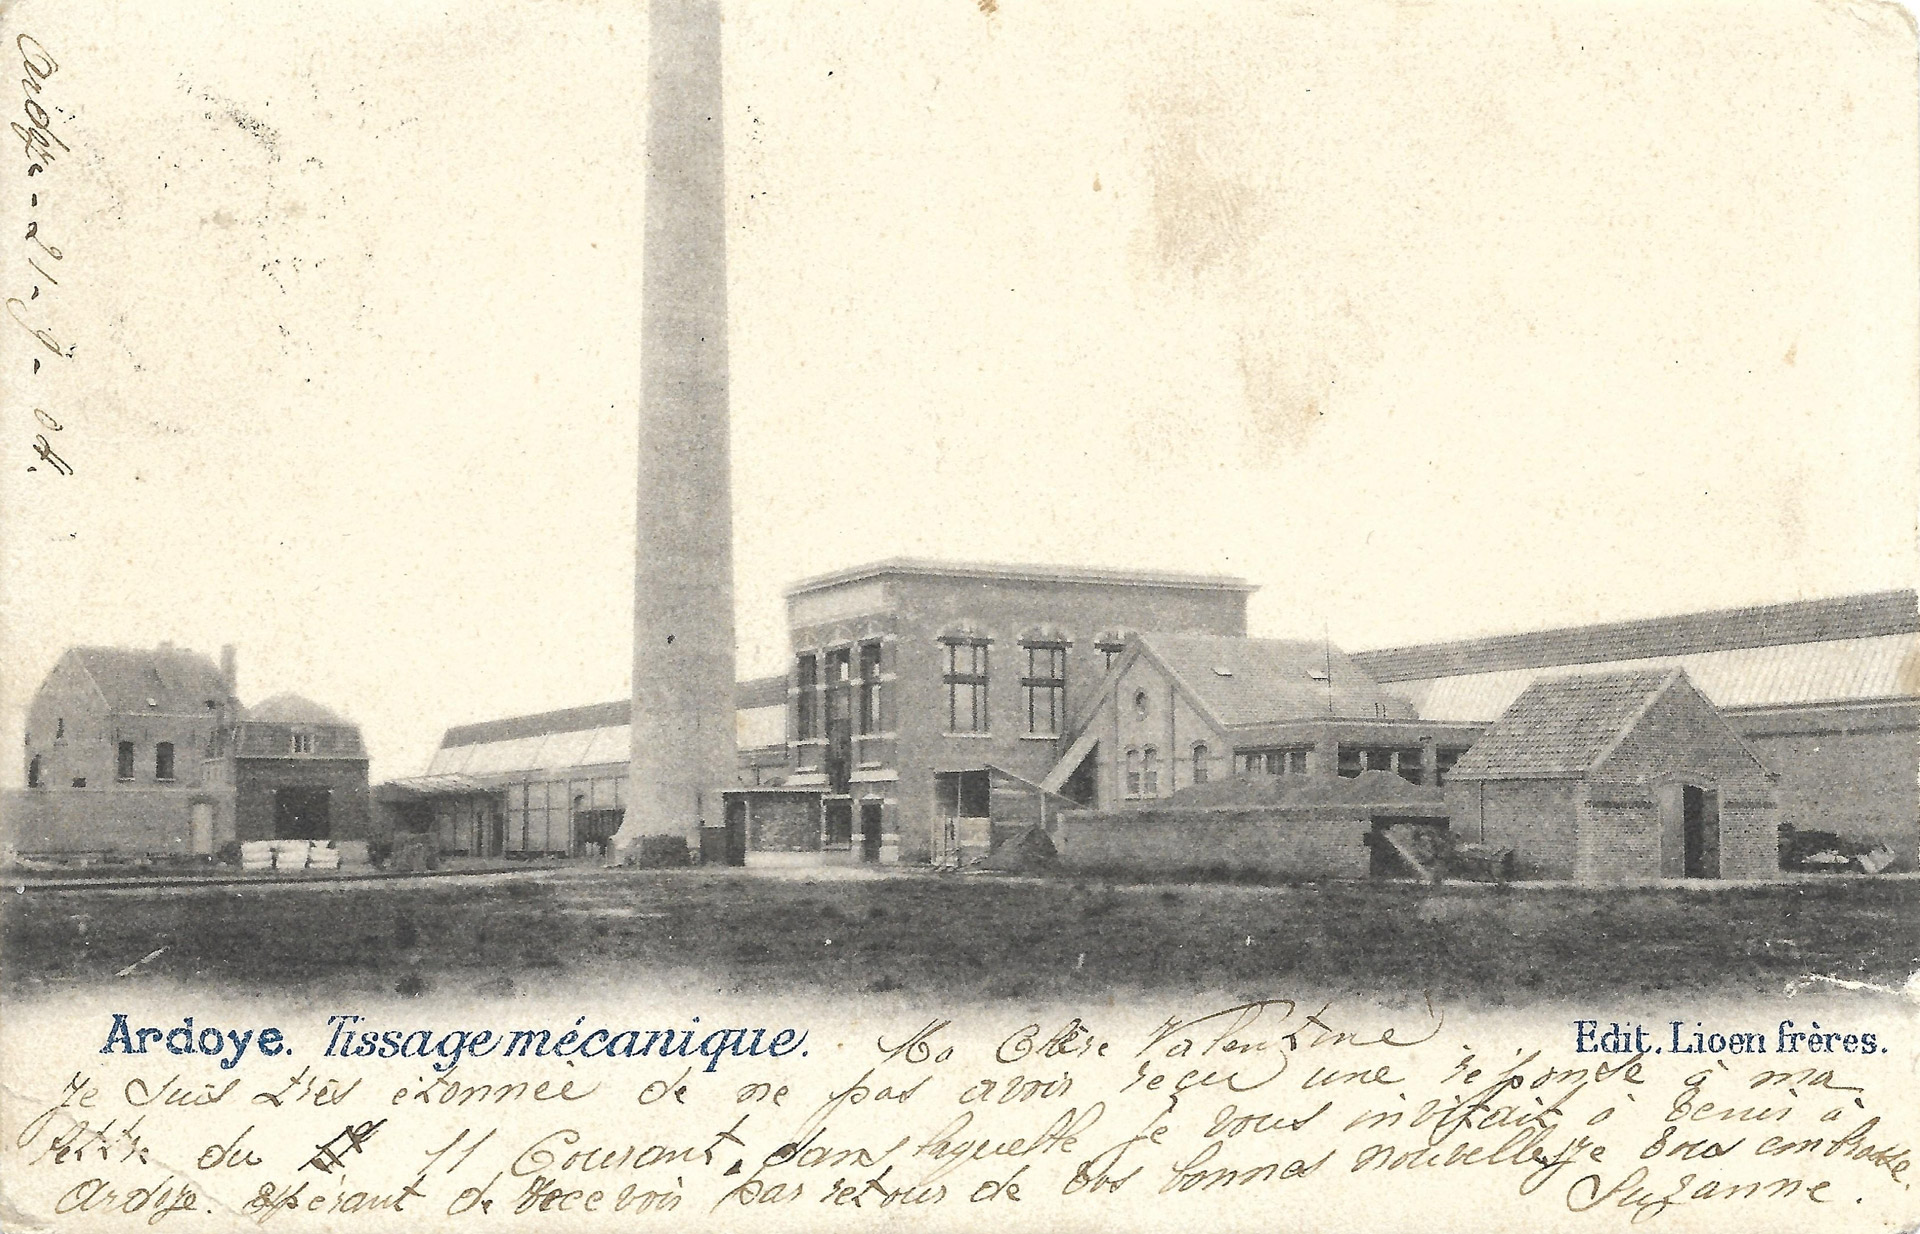 L’usine de tissage De Bal à Ardooie, où furent détenus des prisonniers russes puis italiens │ carte postale circulée le 22.9.1904 │ col. pdgit1918